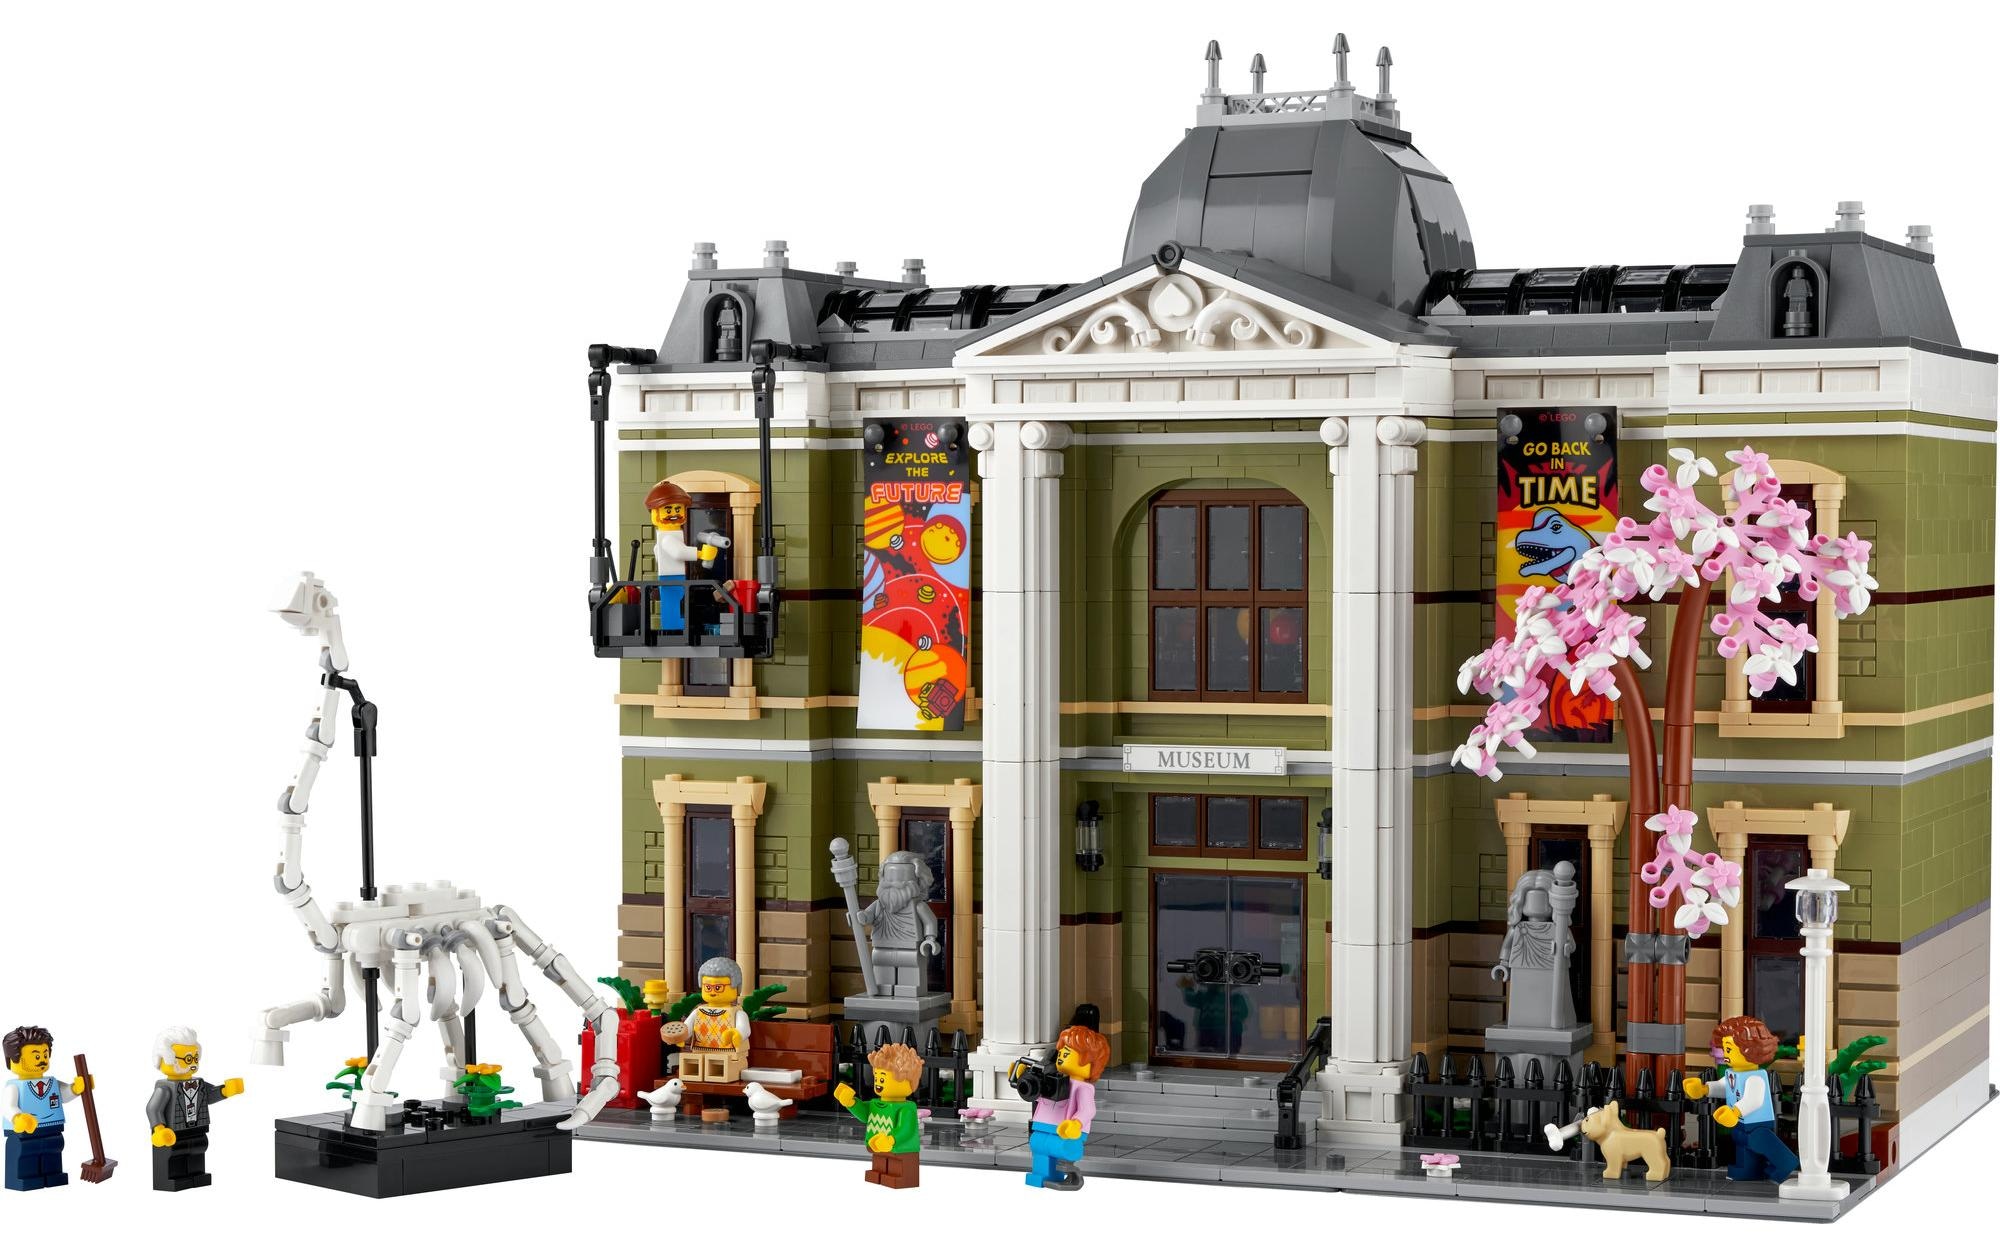 LEGO® Spielbausteine »Icons Naturhistorisches Museum 10326«, (4014 St.)